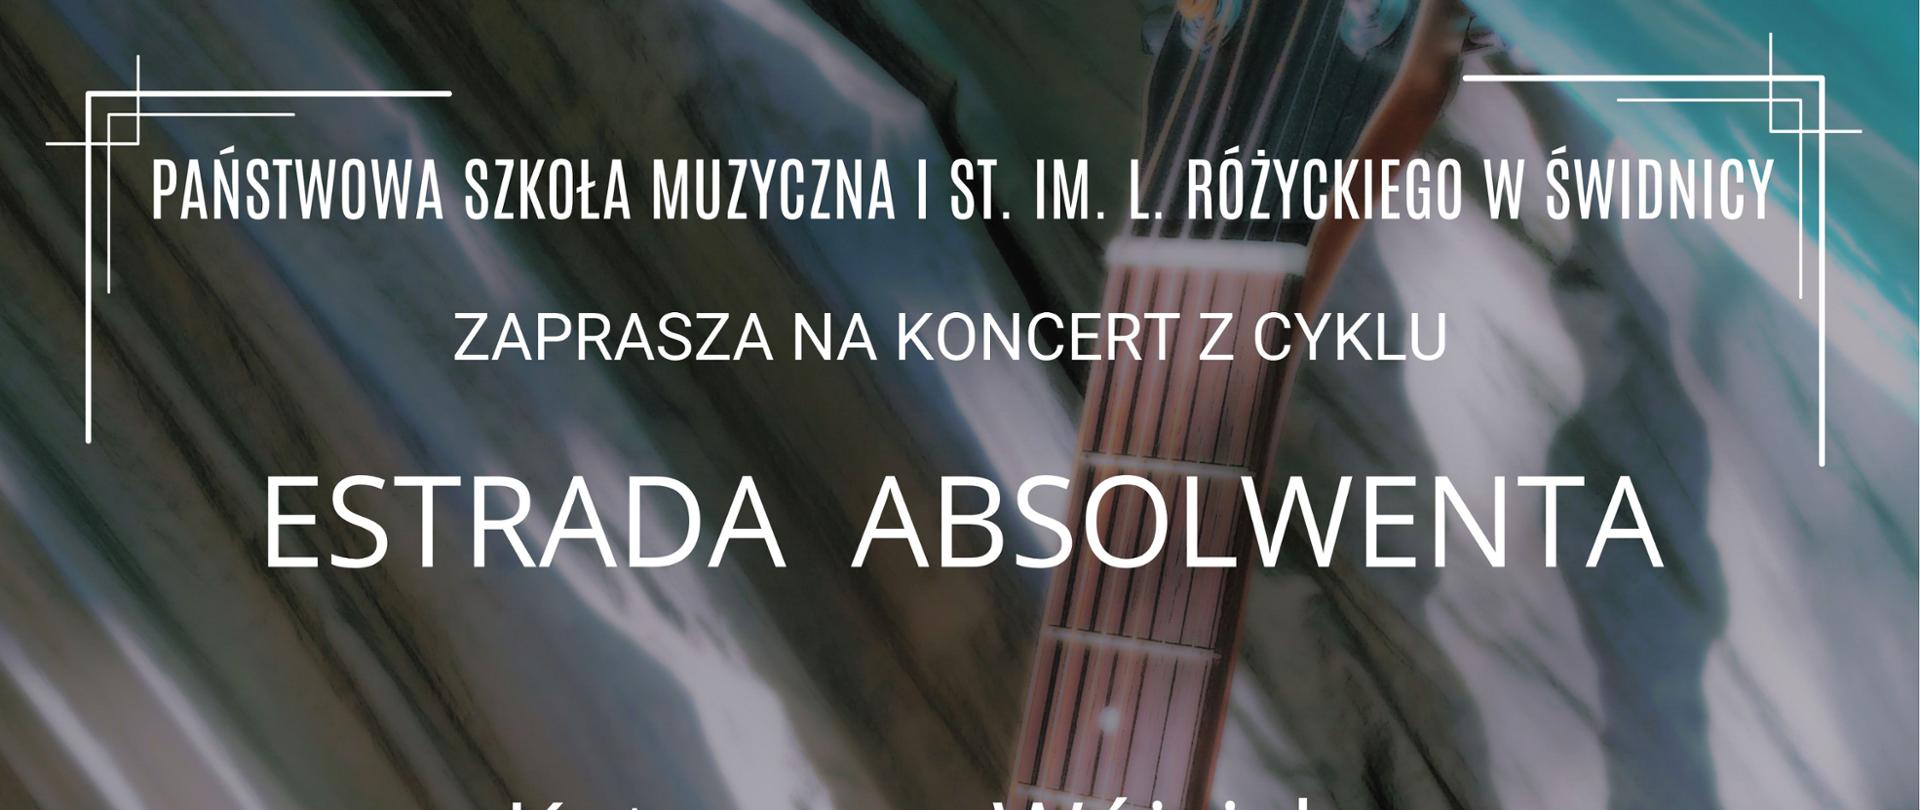 Plakat informujący o koncercie c cyklu "Estrada absolwenta". Tło- gitara na kolorowym materiale. Napisy biała czcionka. W rogach białe ozdobne ramki.